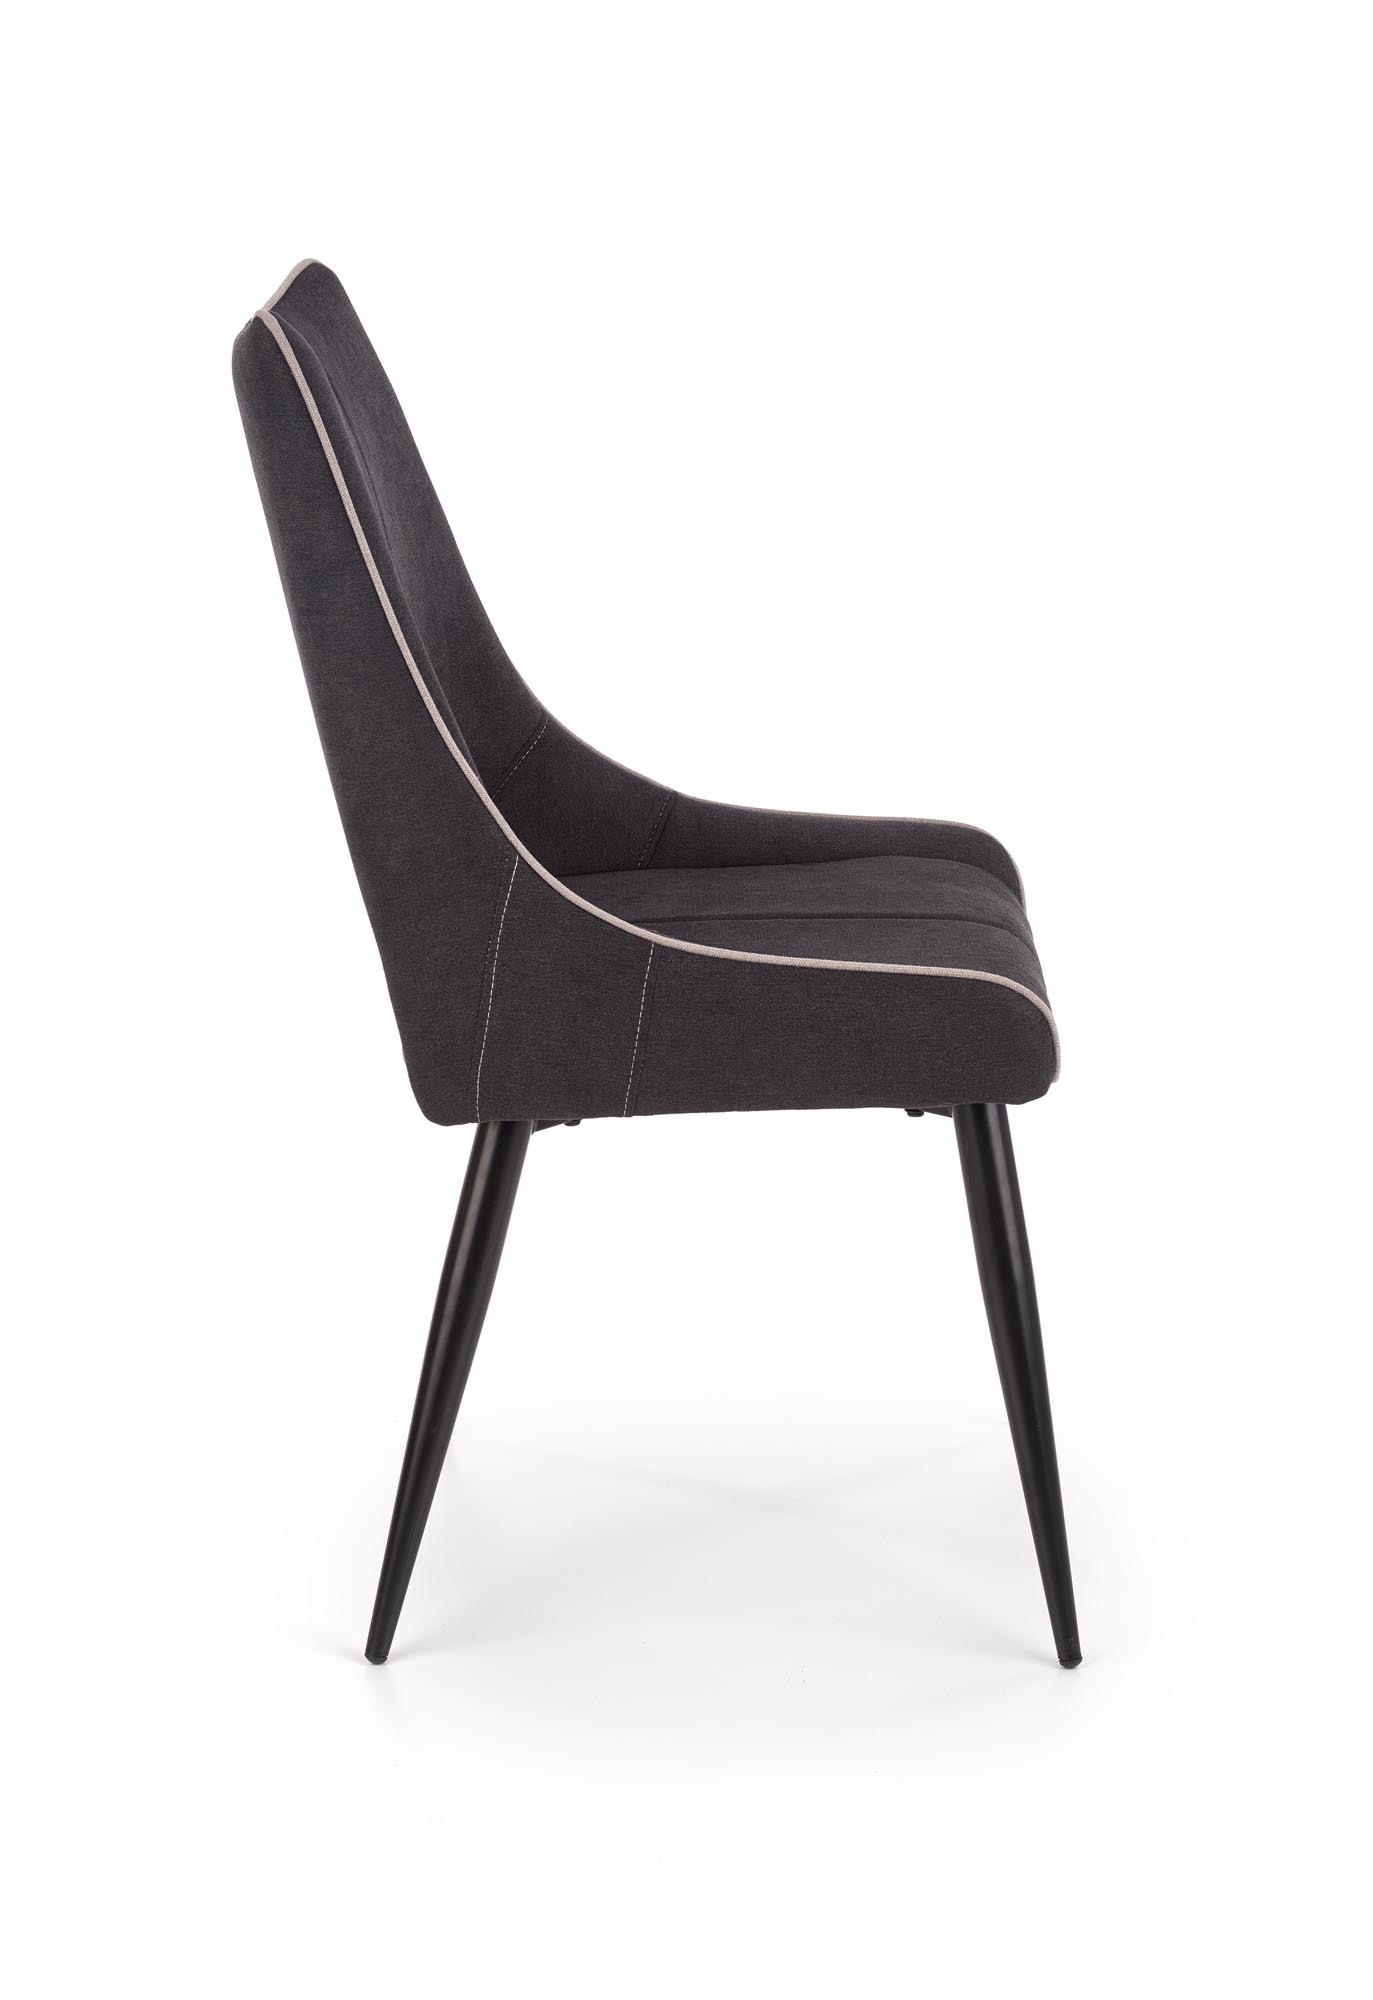 Židle čalouněná K369 - tmavý popel Židle čalouněné k369 - tmavý popel